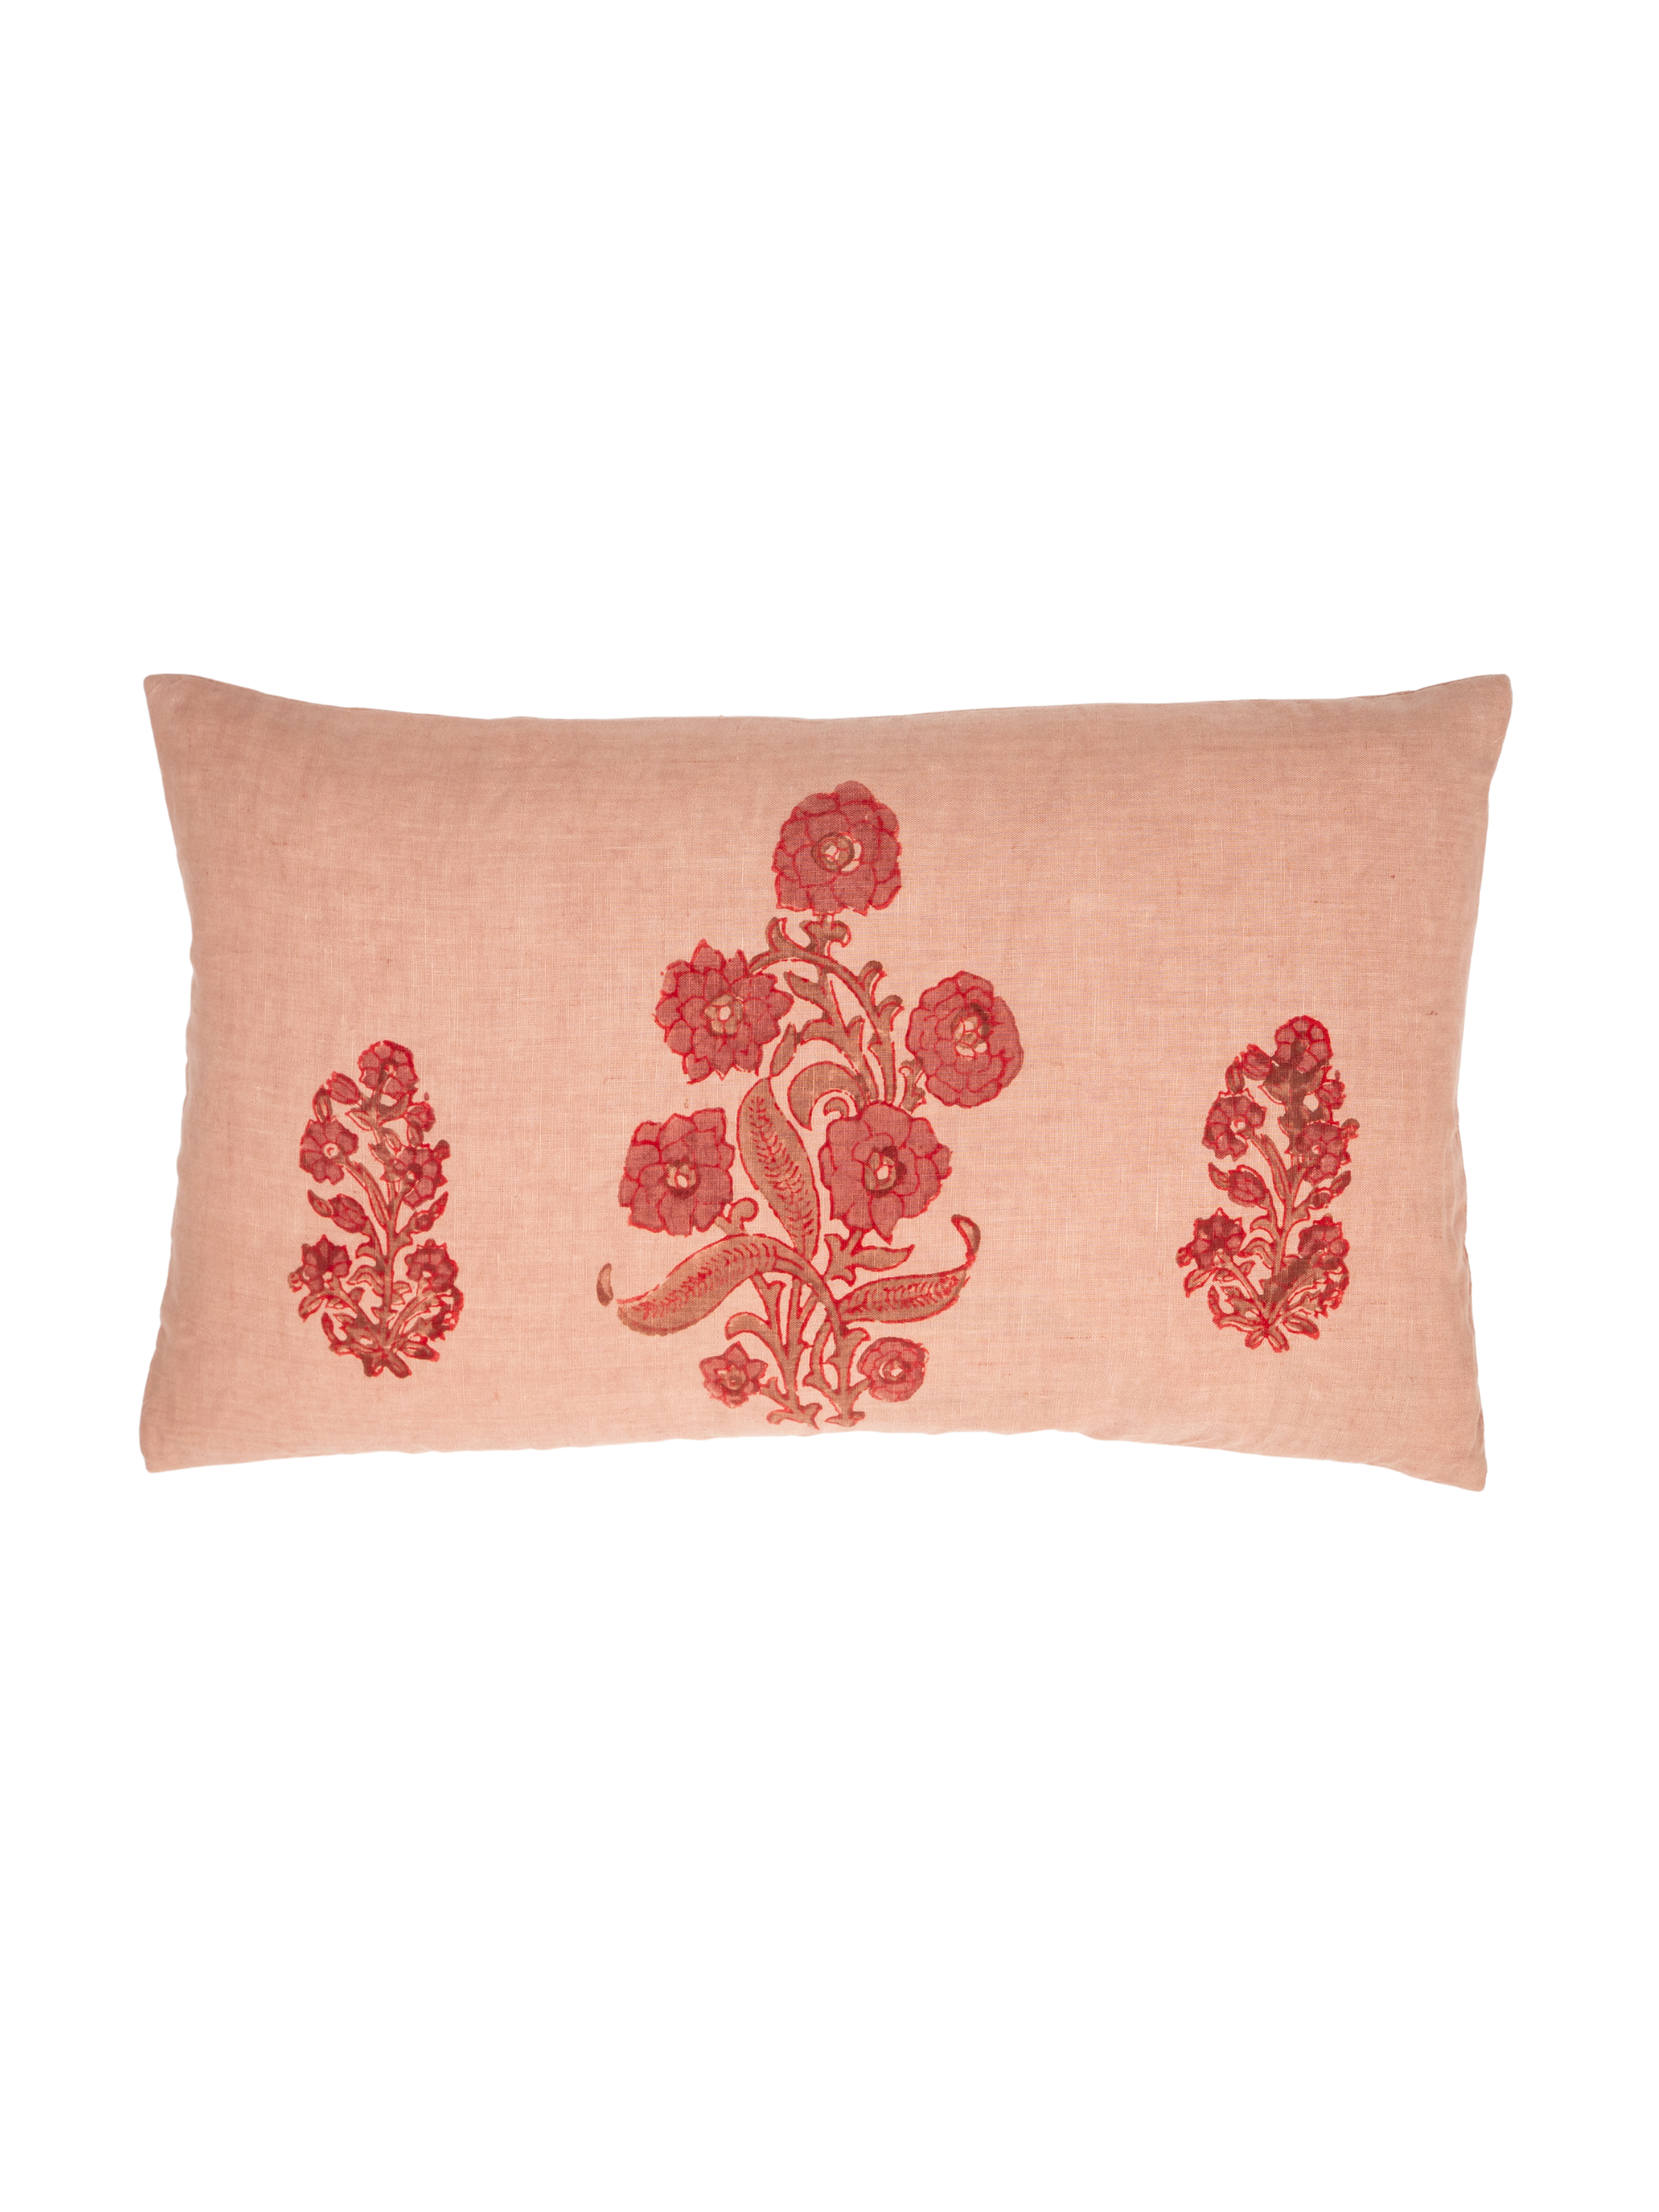 English Garden Petit Lumbar Pillow Cover